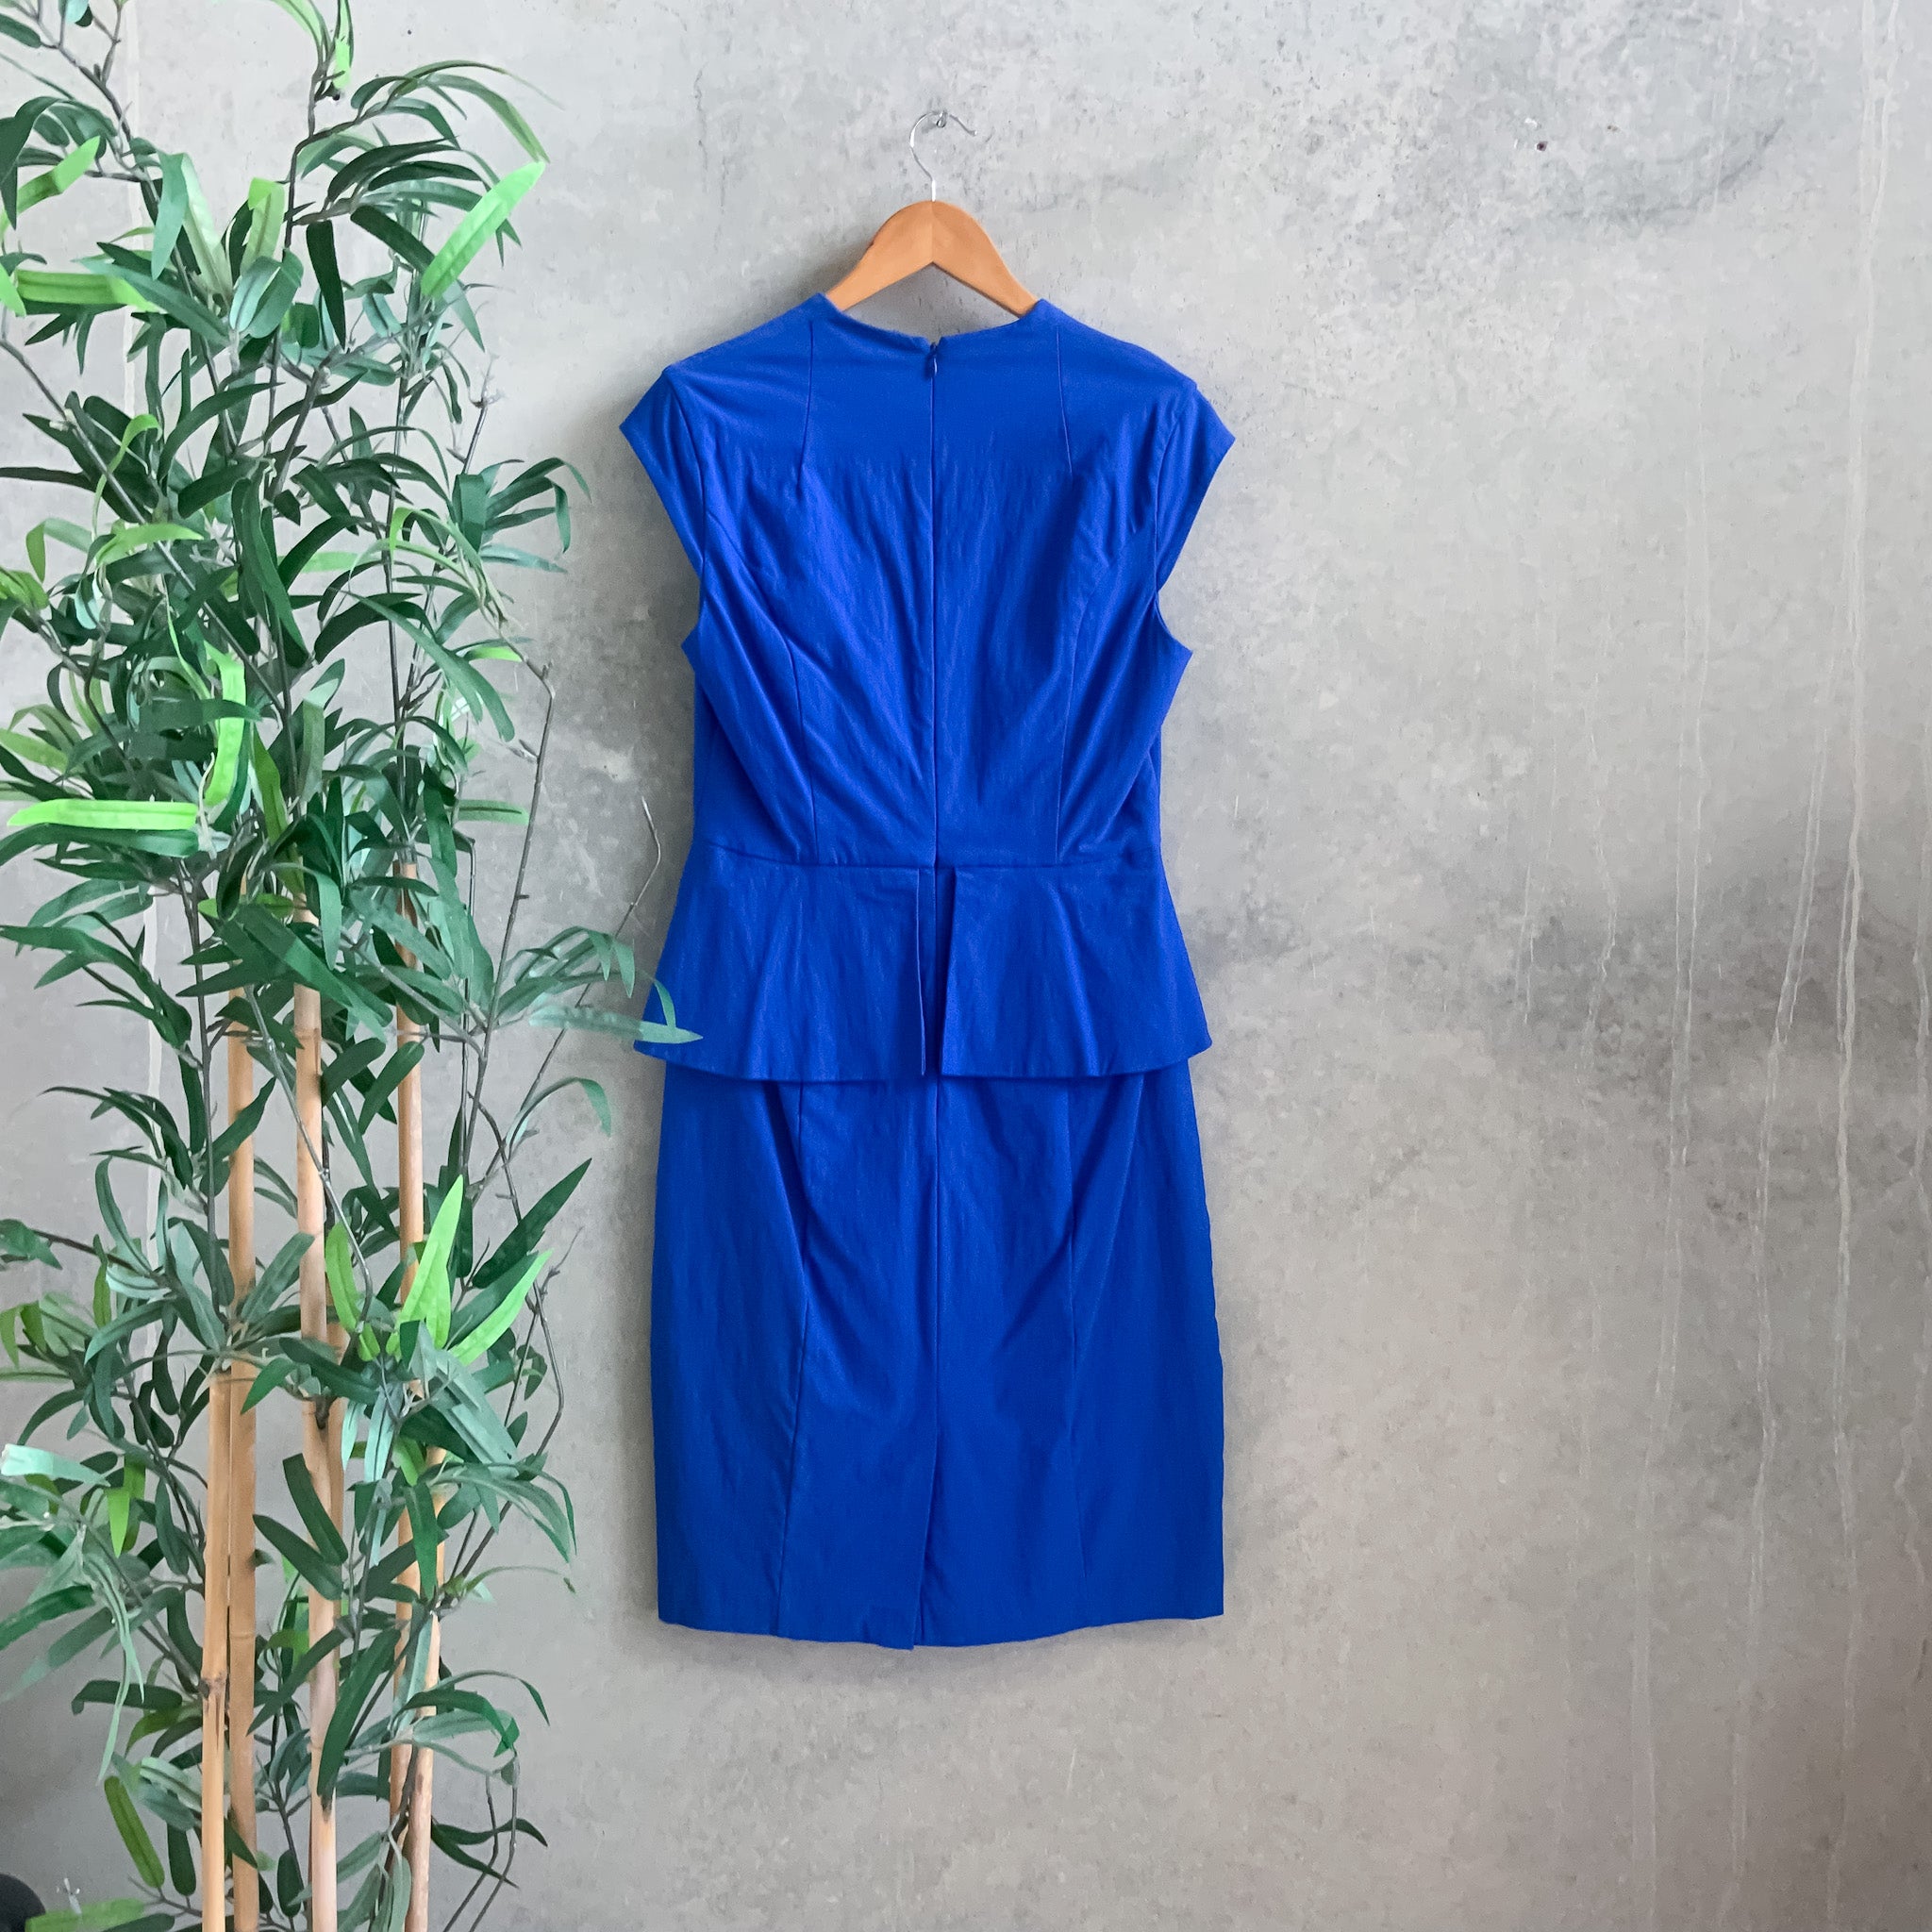 BASQUE Cobalt Blue Structured Peplum Pencil Dress - Size 10